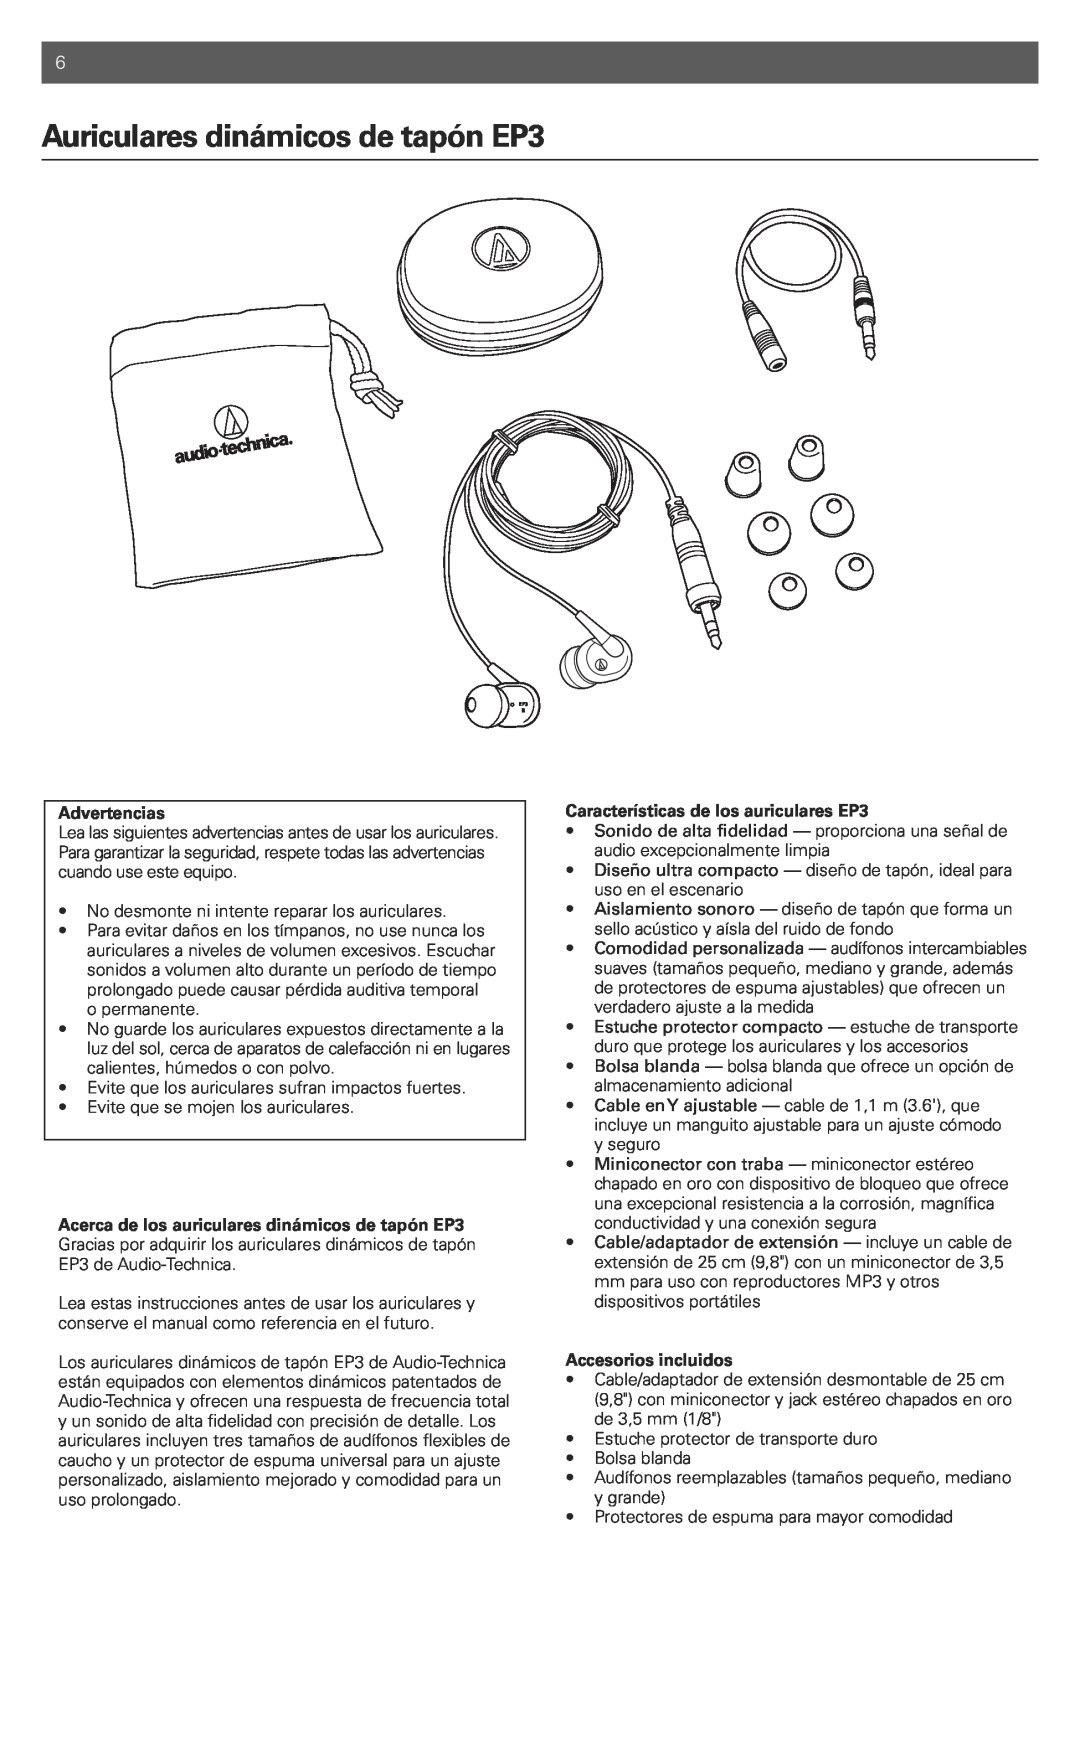 Audio-Technica manual Auriculares dinámicos de tapón EP3, Advertencias, Características de los auriculares EP3 